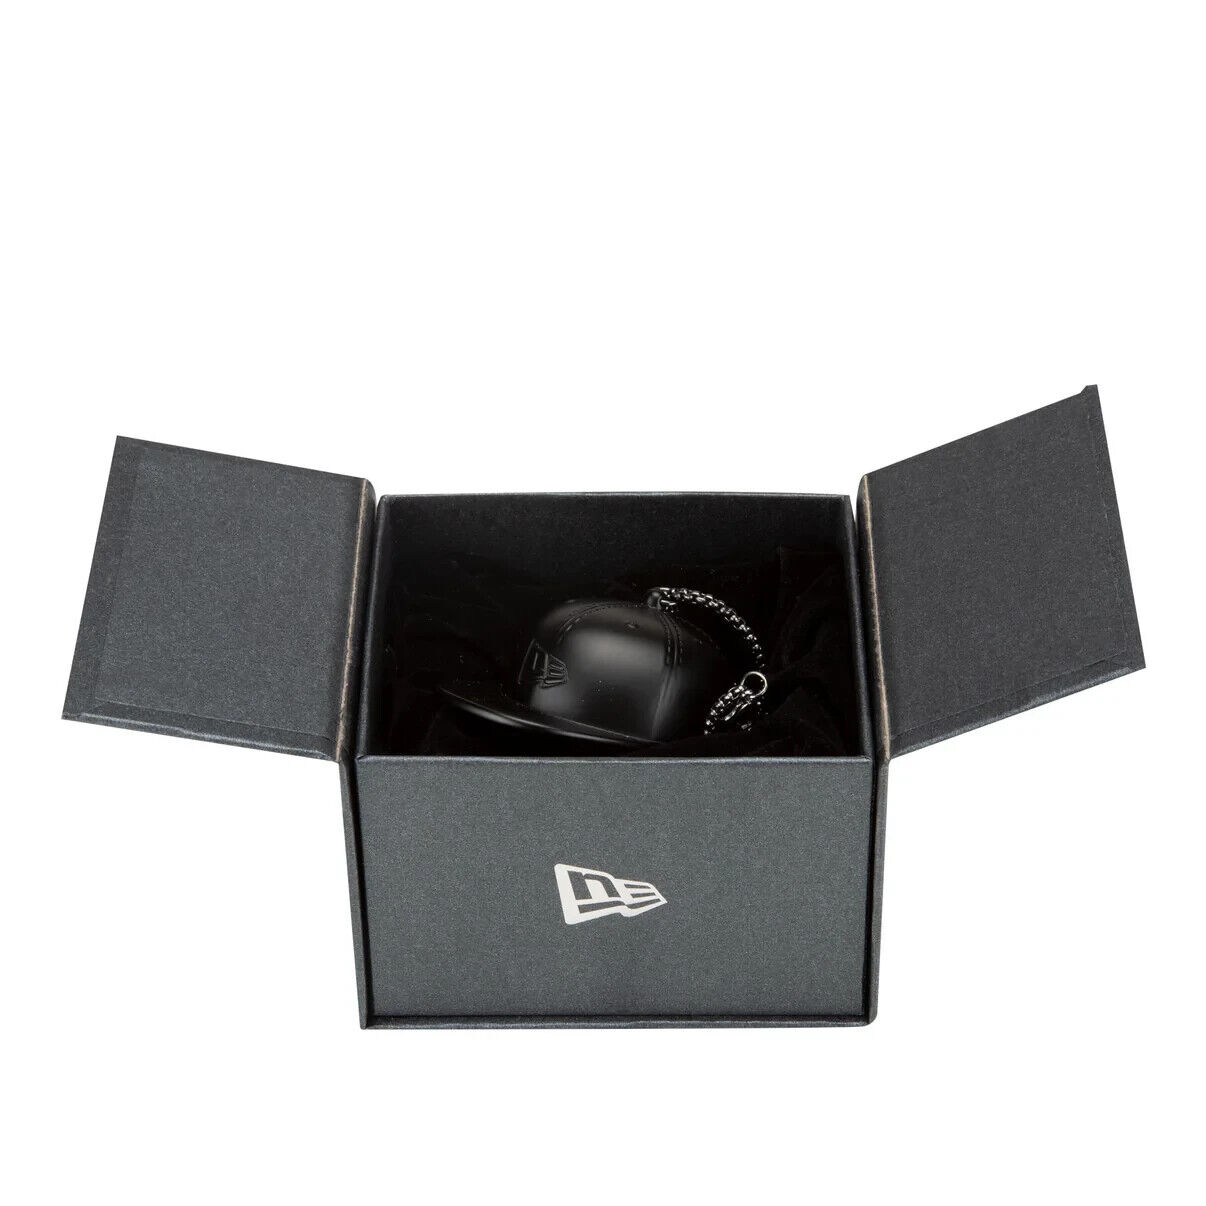 New Era 59FIFTY Fitted Ornament Hat Cap Charm Black - NIB New In Box